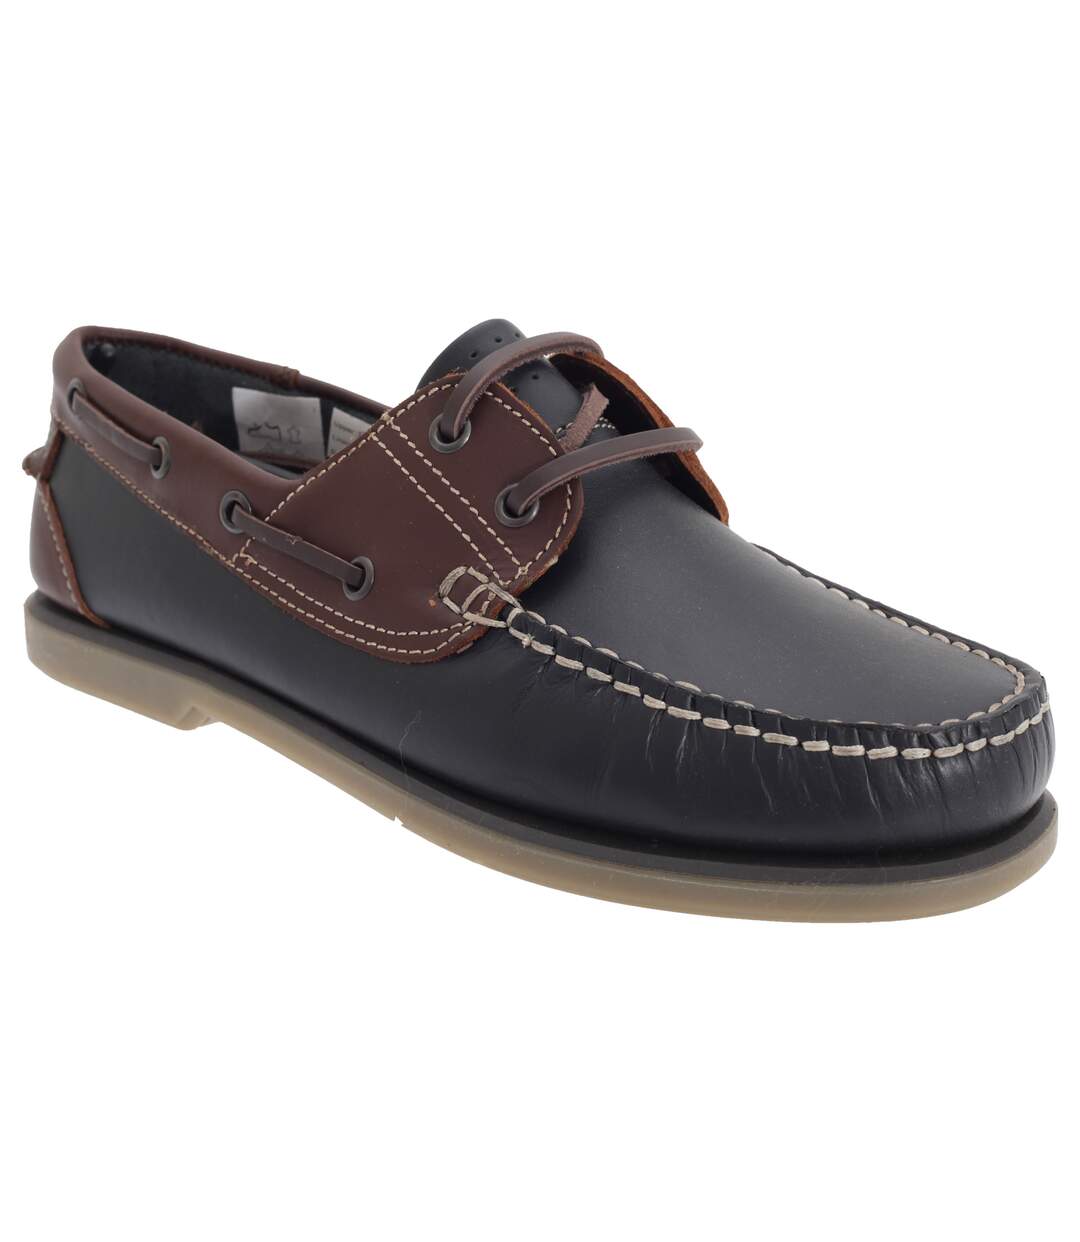 Dek Mens Moccasin Boat Shoes (Navy Blue/Brown Leather) - UTDF676 ...